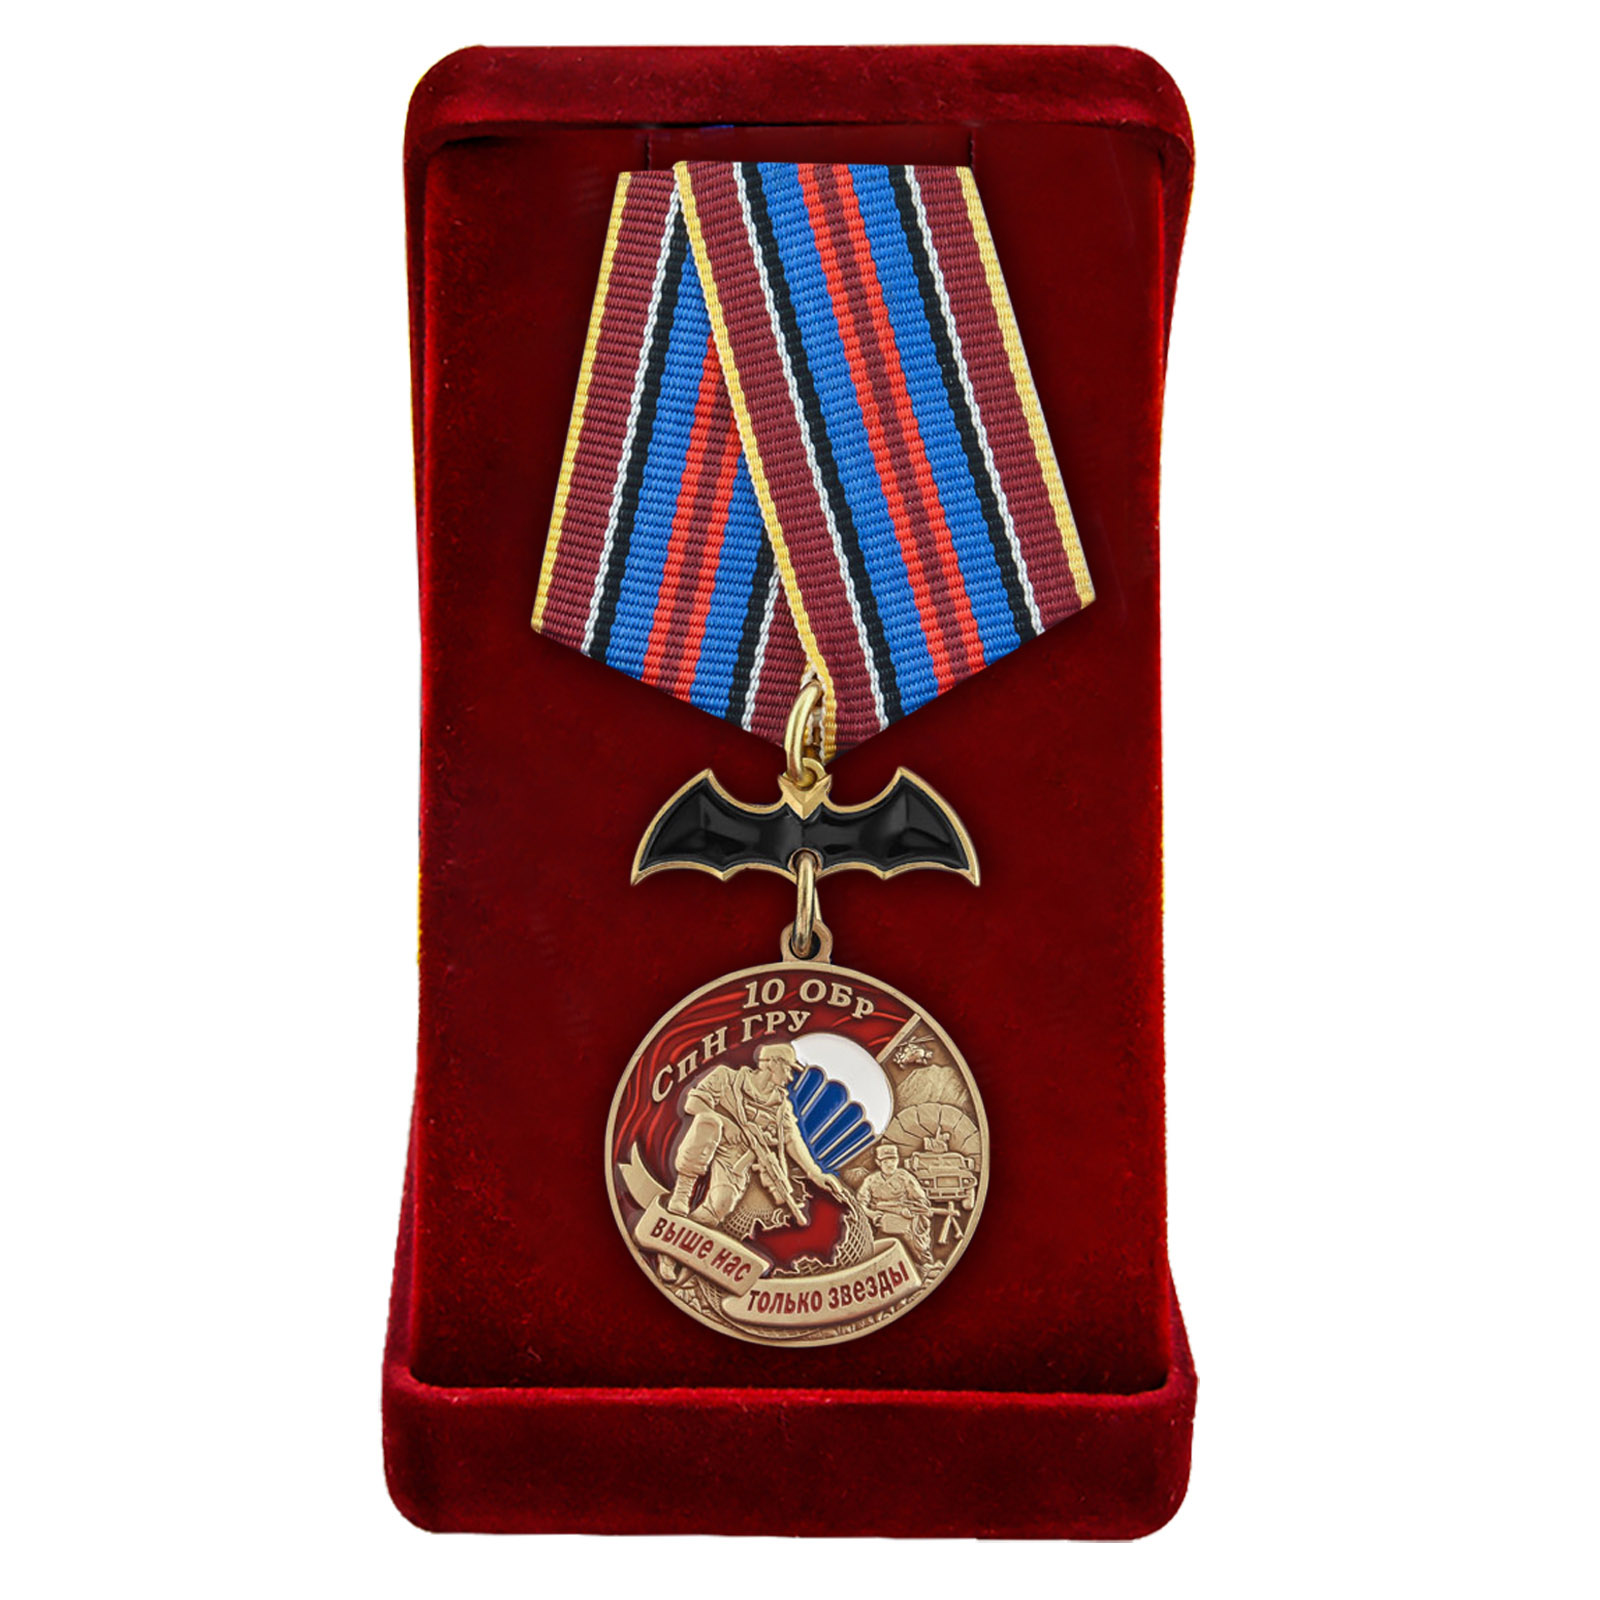 Купить медаль 10 ОБрСпН ГРУ по специальной цене